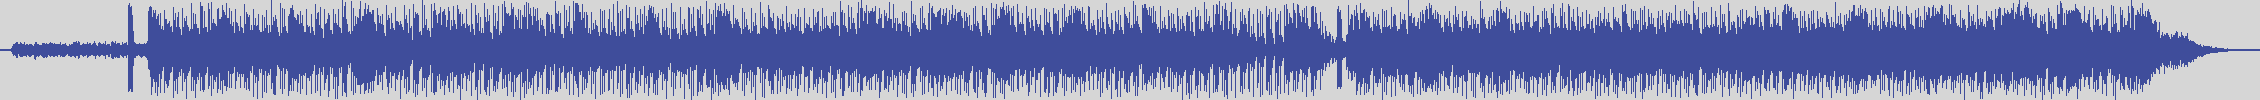 upr [UPR010] Position Parallele - Je T'en Prie Rêve [Original Mix] audio wave form